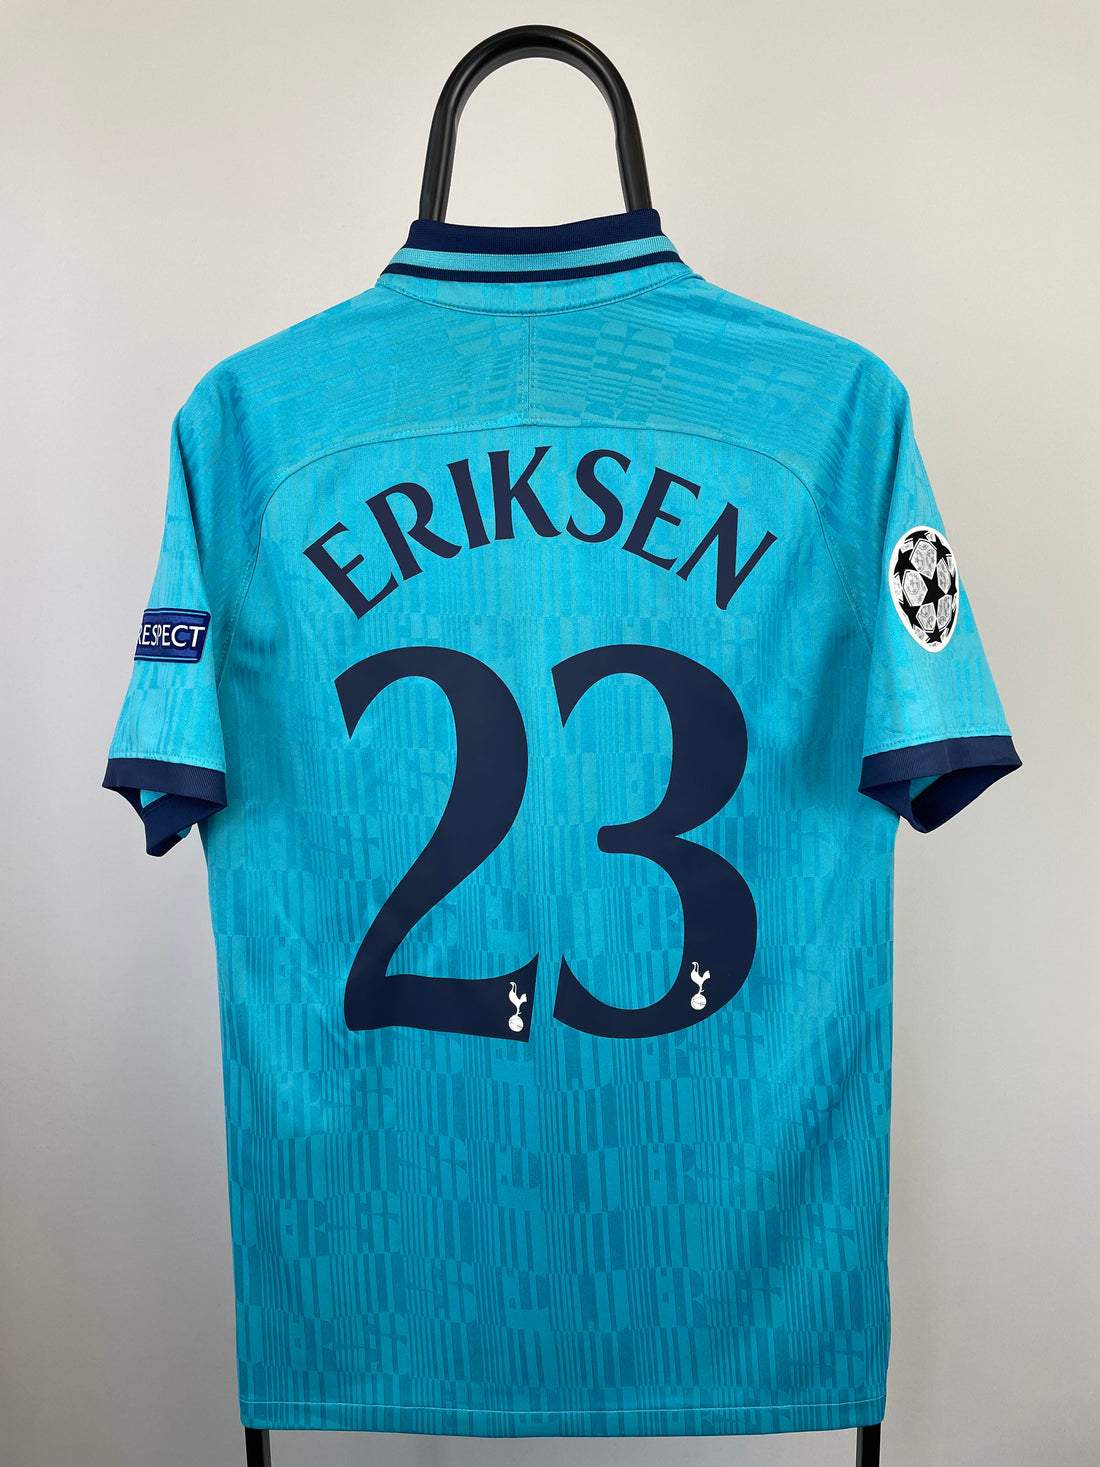 Christian Eriksen Tottenham 19/20 3 trøje - M